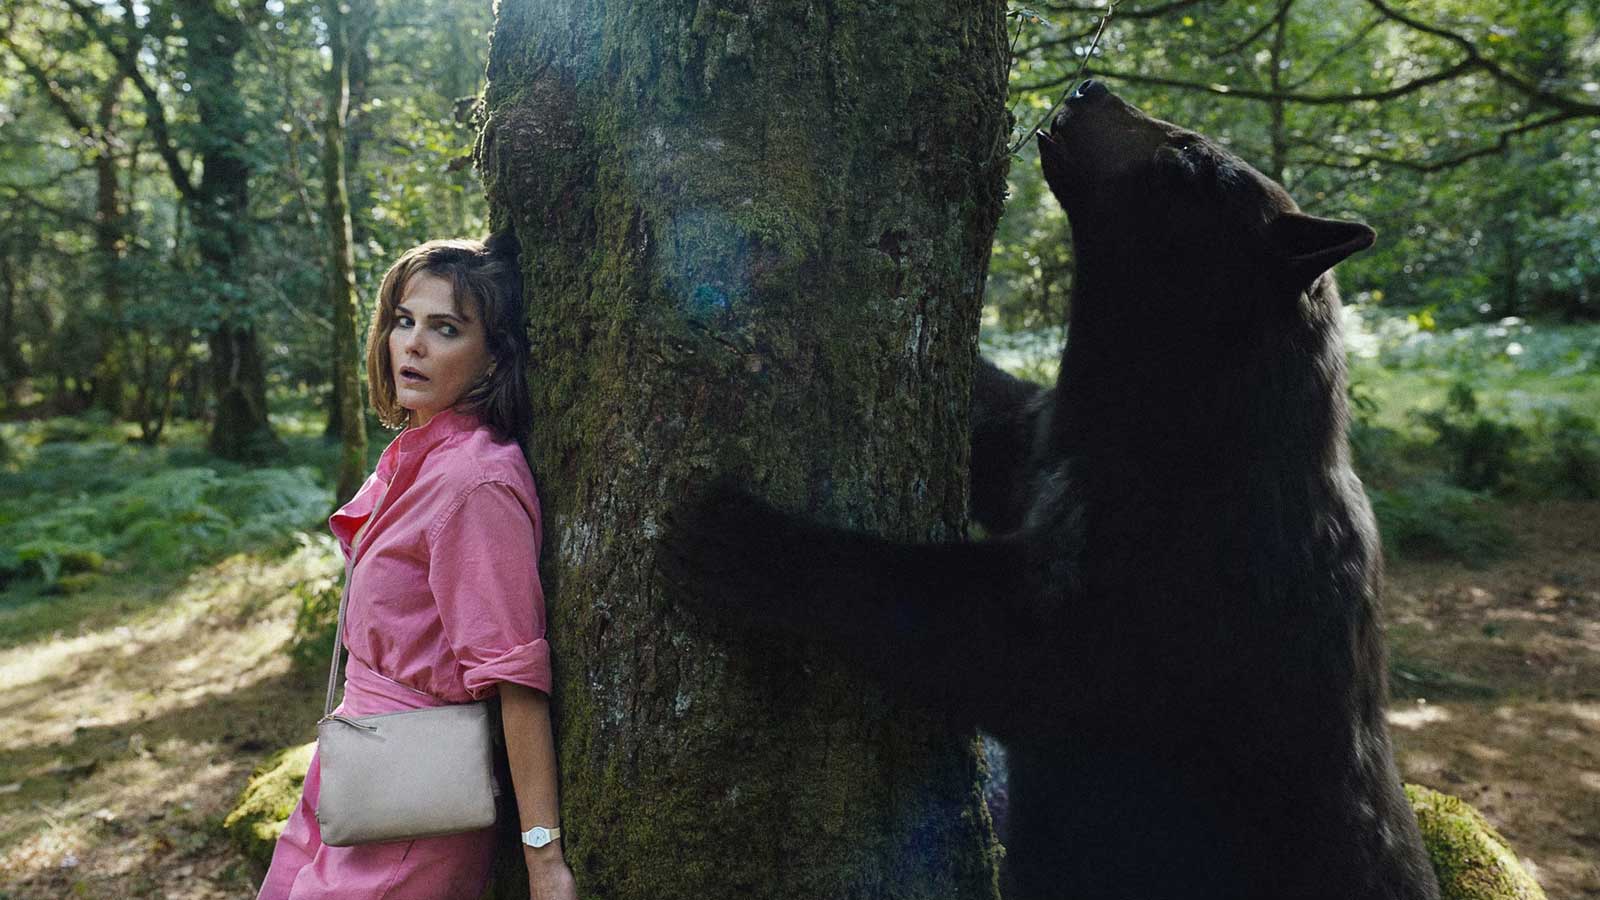 تکیه زن با لباس صورتی به درخت در جنگل فیلم Cocaine Bear (خرس کوکائینی)، یکی از مورد انتظارترین فیلم های ۲۰۲۳